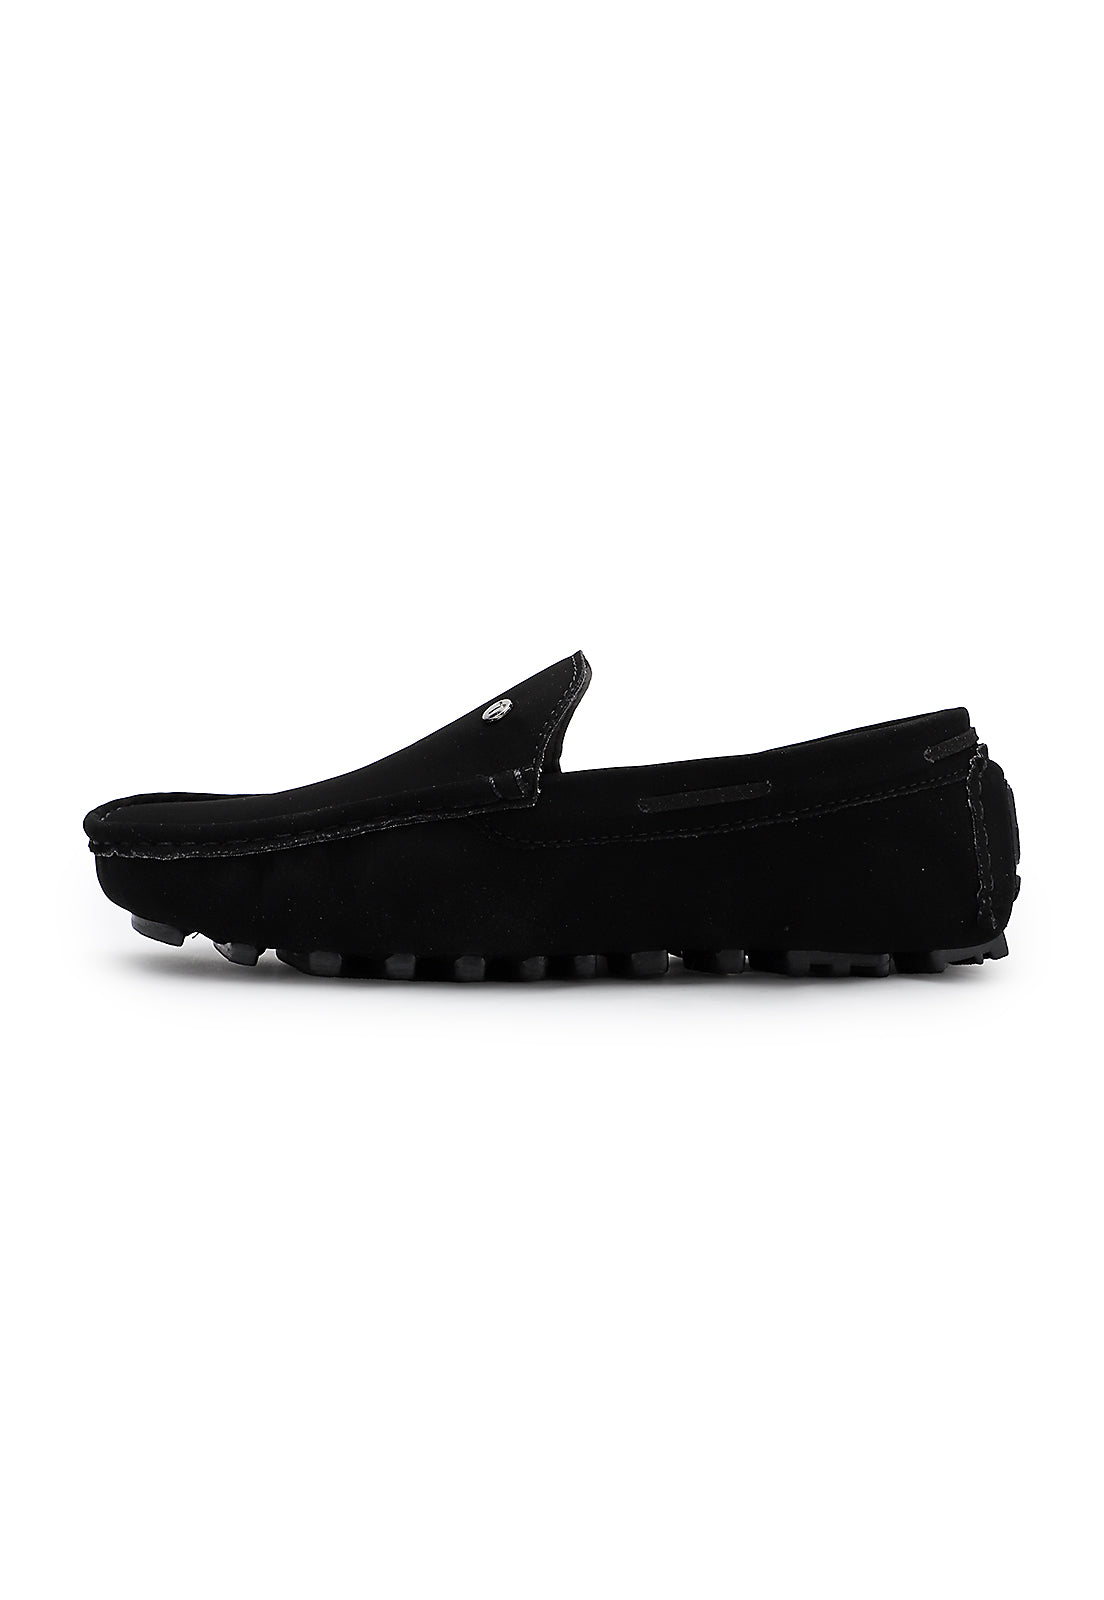 zapato hombre tubular Negro Tellenzi 026